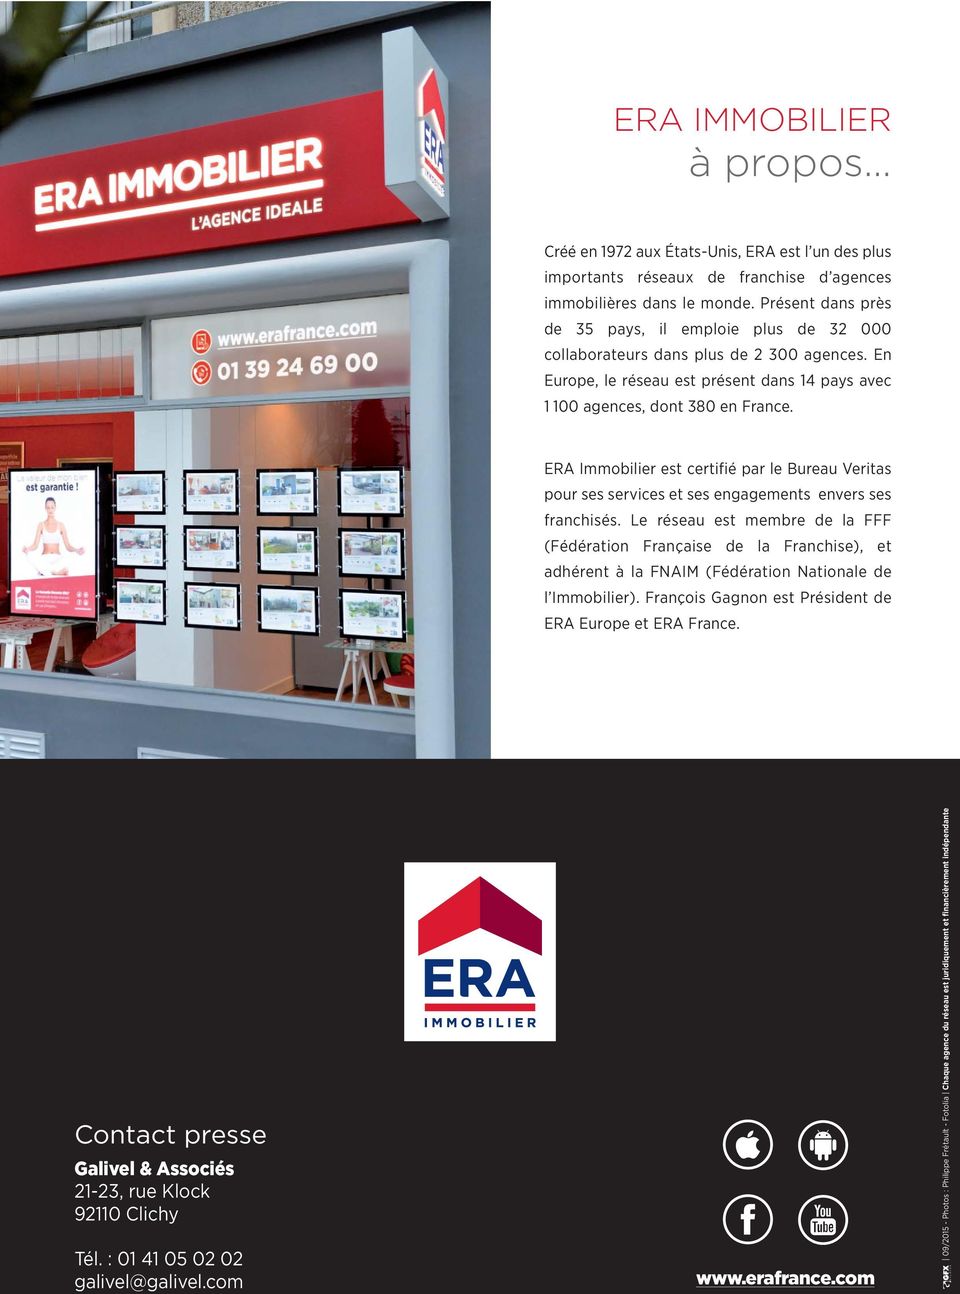 ERA Immobilier est certifié par le Bureau Veritas pour ses services et ses engagements envers ses franchisés.